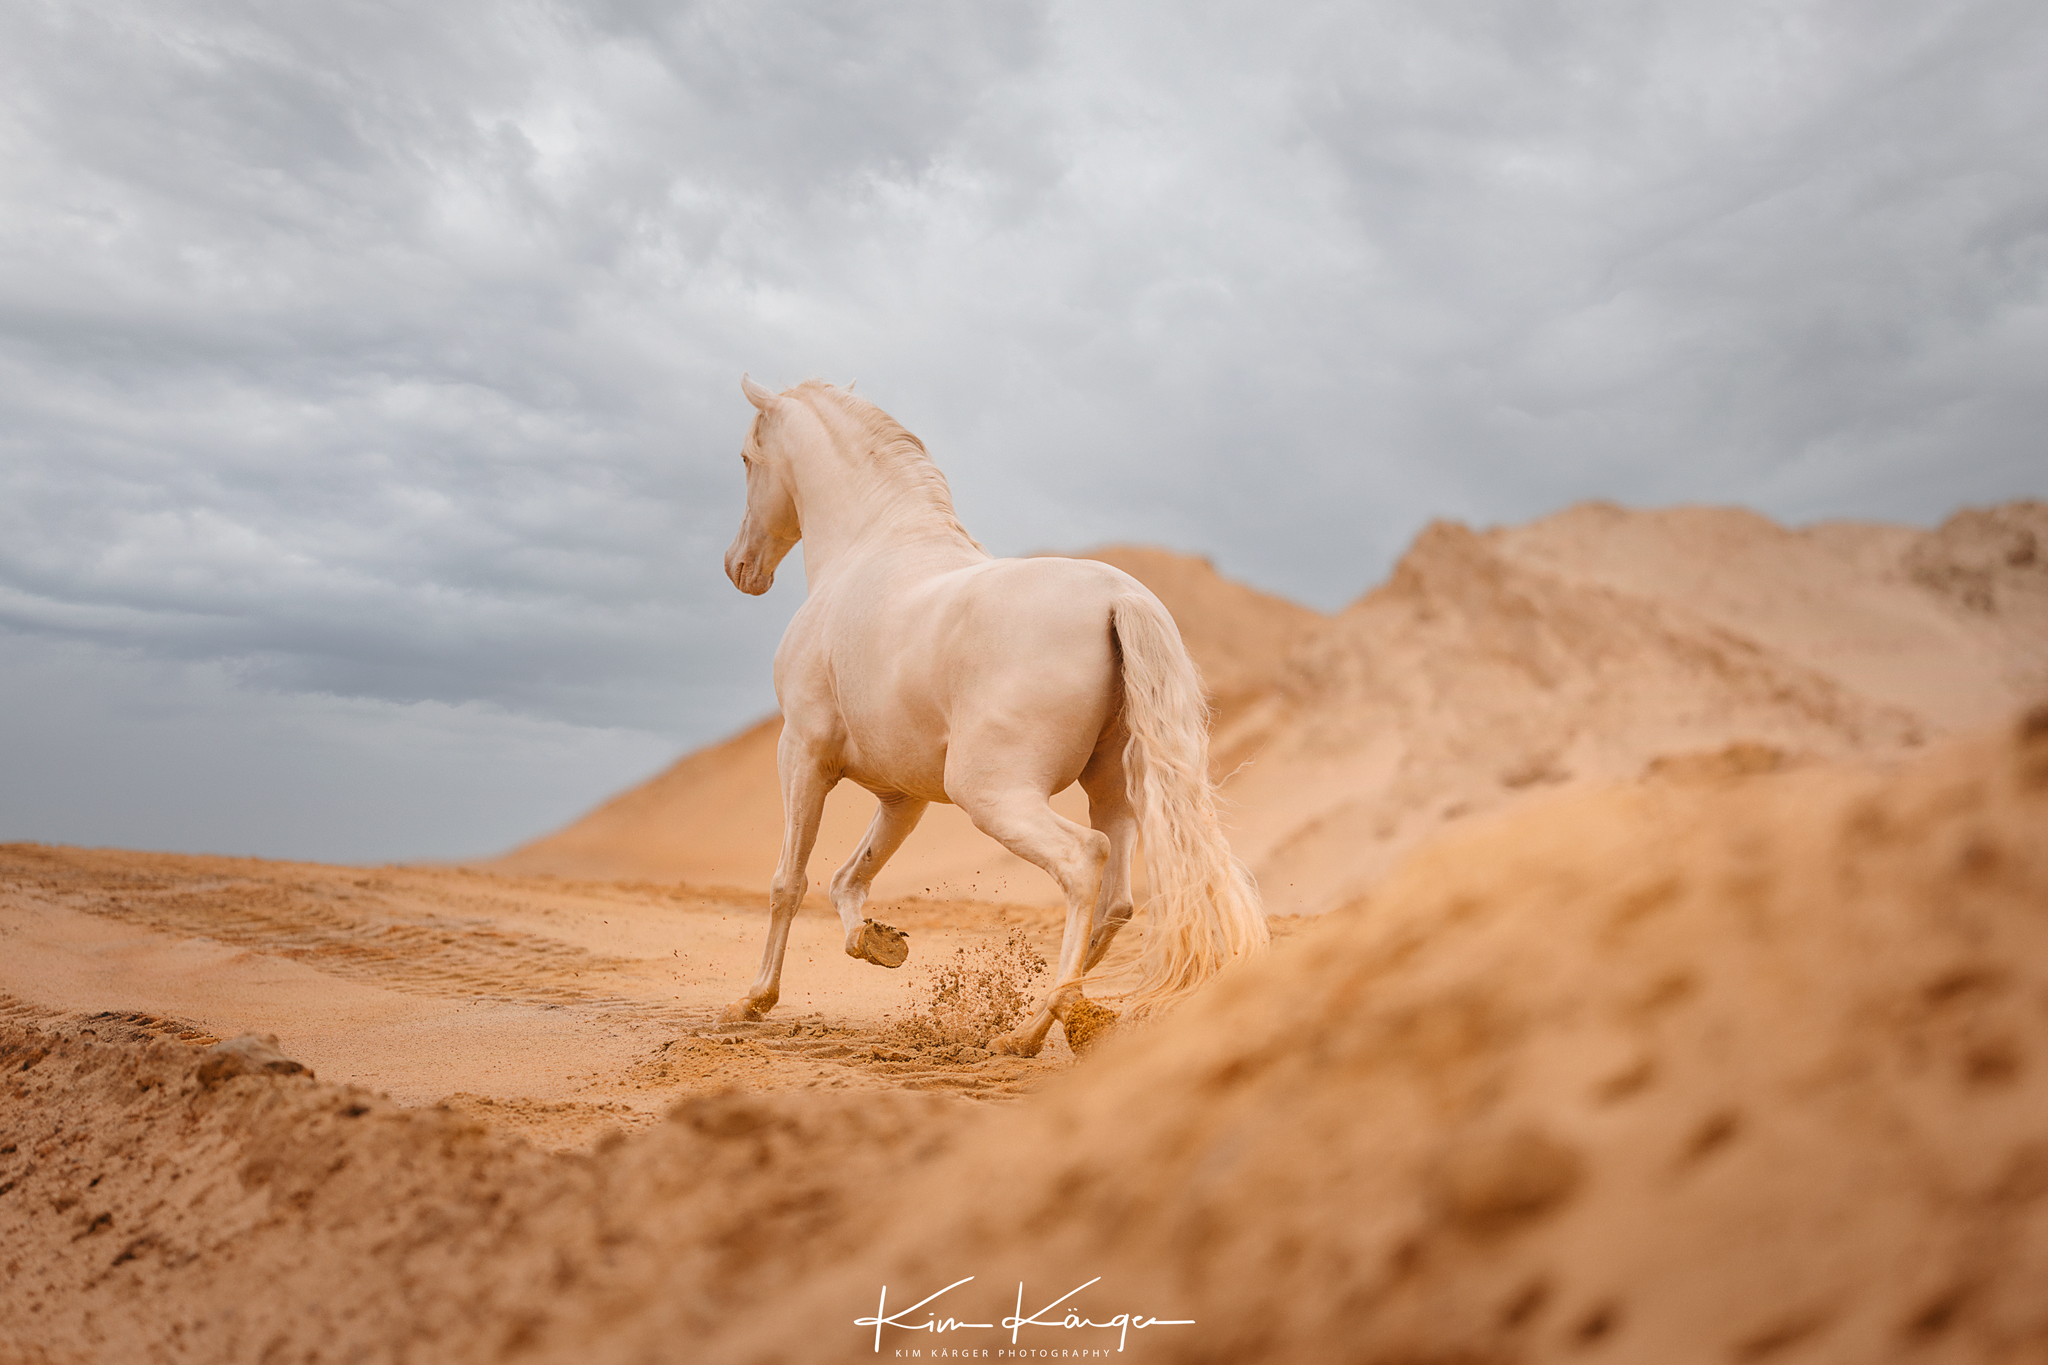 Trabendes Pferd in der Sandgrube vor Gewitterhimmel.